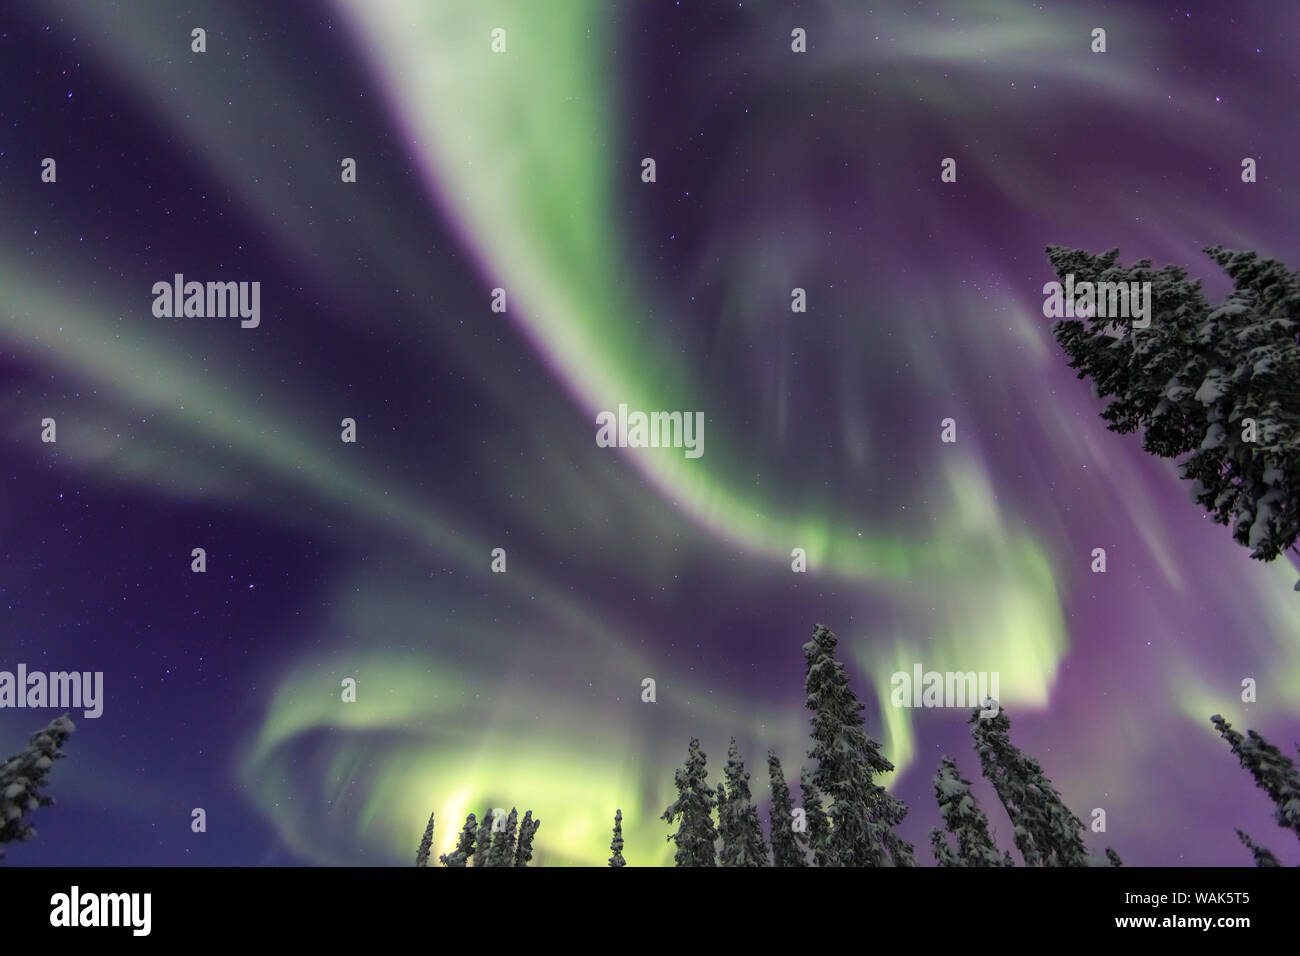 Aurora borealis, Northern Lights, near Fairbanks, Alaska Stock Photo